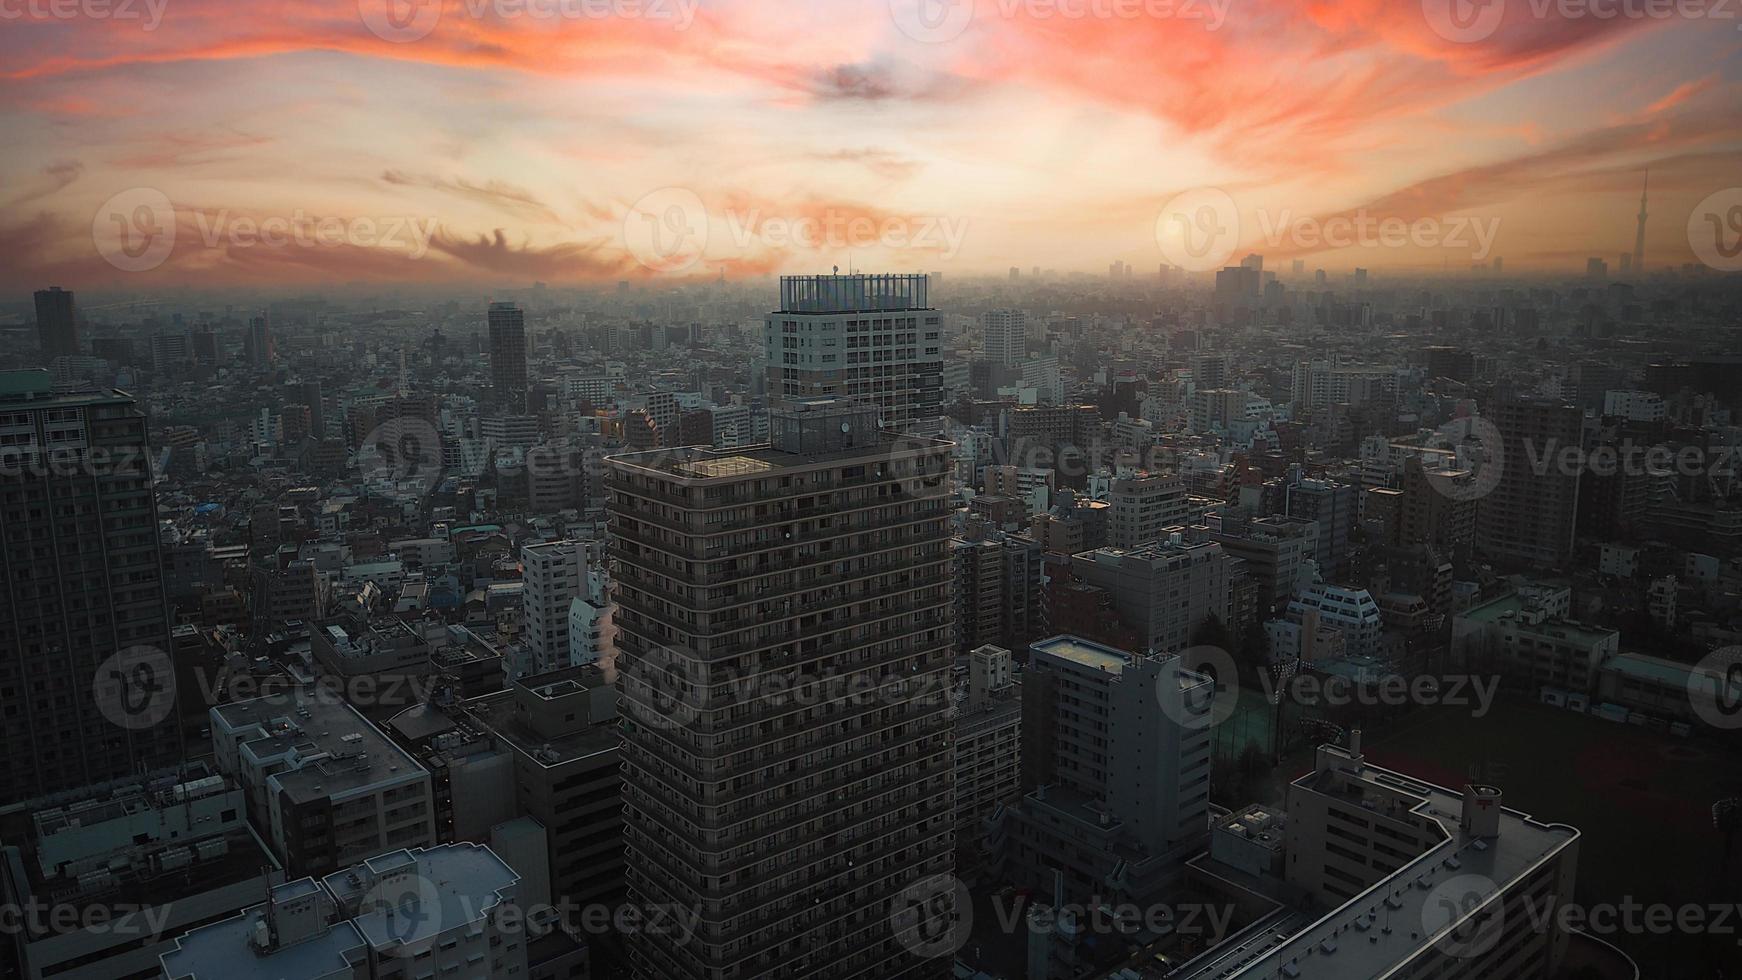 distrito de ikebukuro. vista aérea da cidade de ikebukuro, Tóquio, Japão. foto